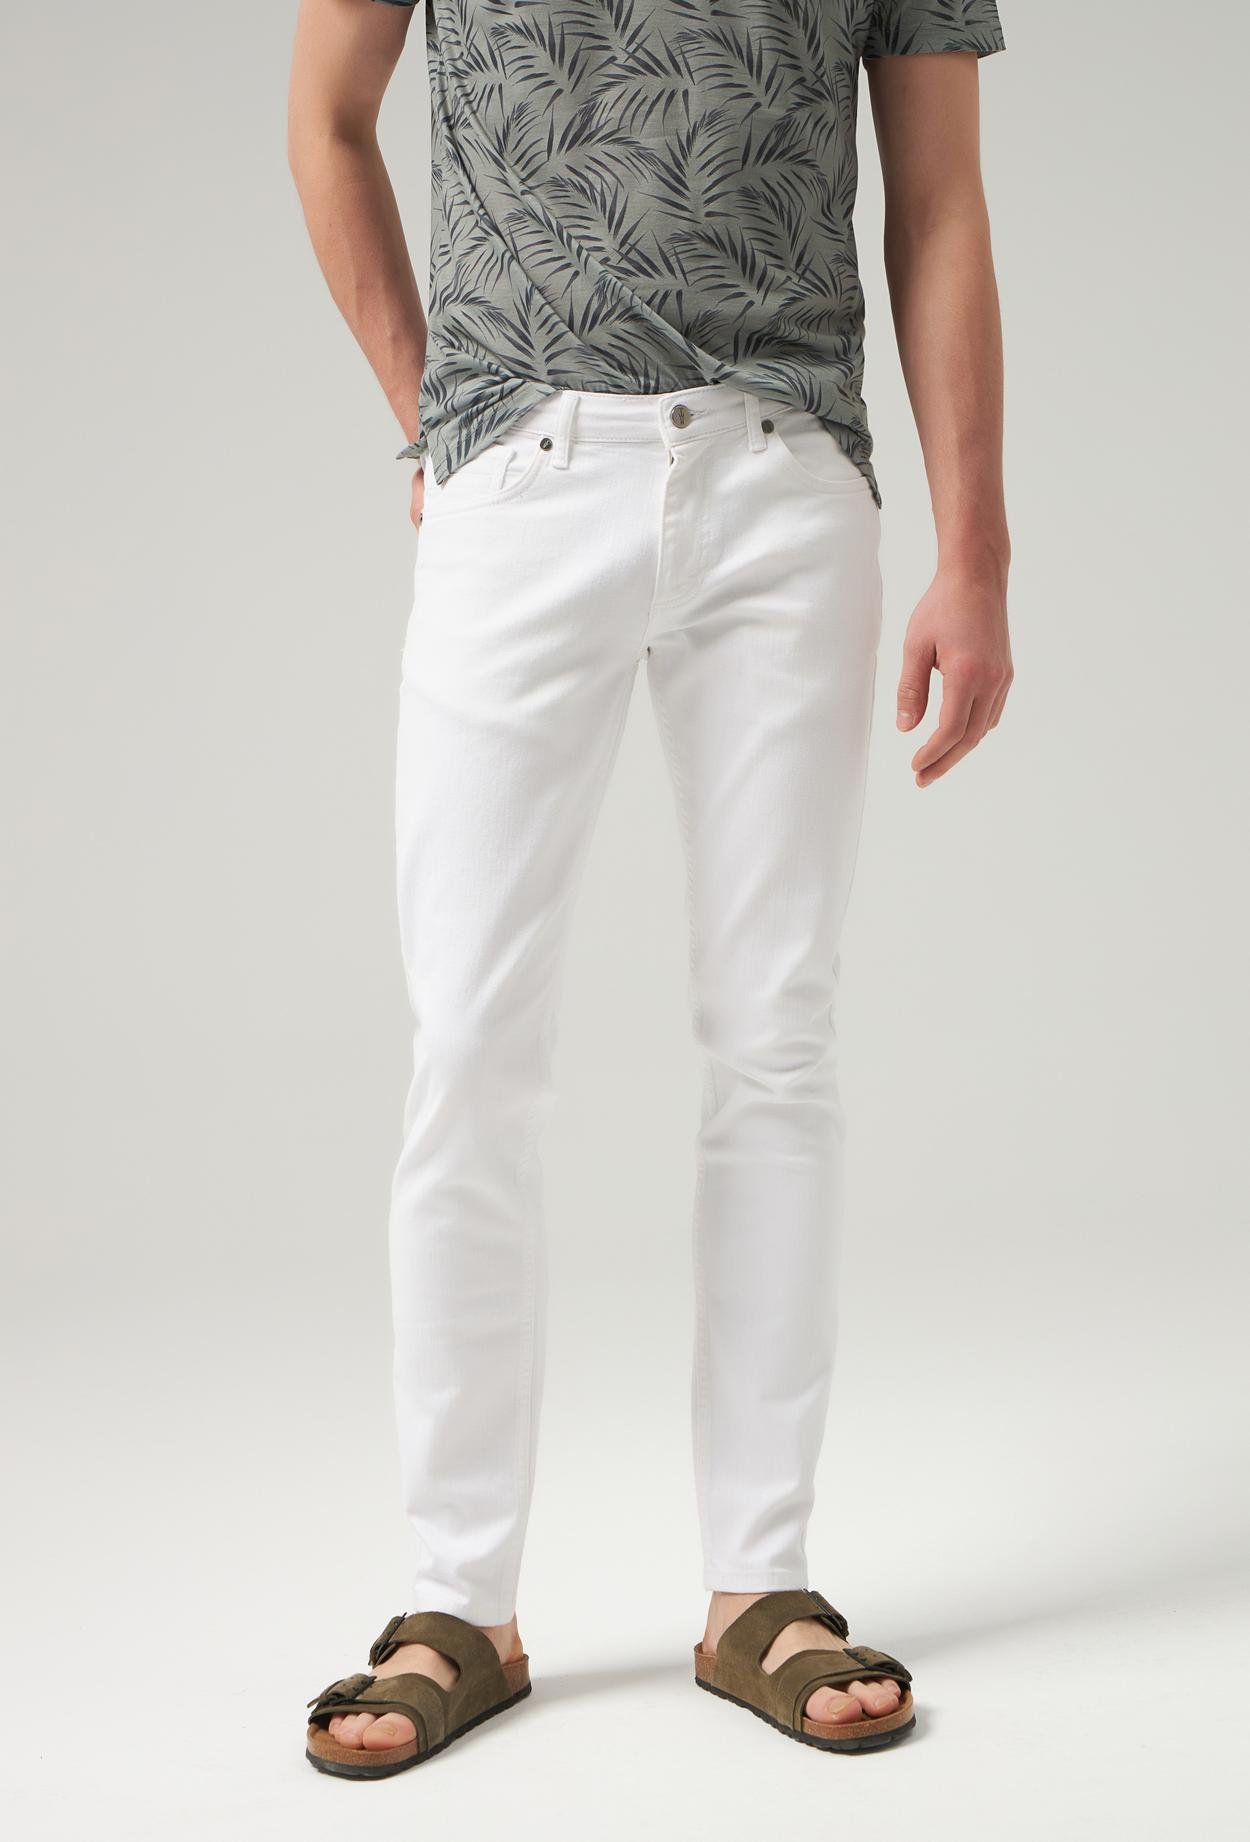 Twn Super Slim Fit Beyaz Denim Pantolon